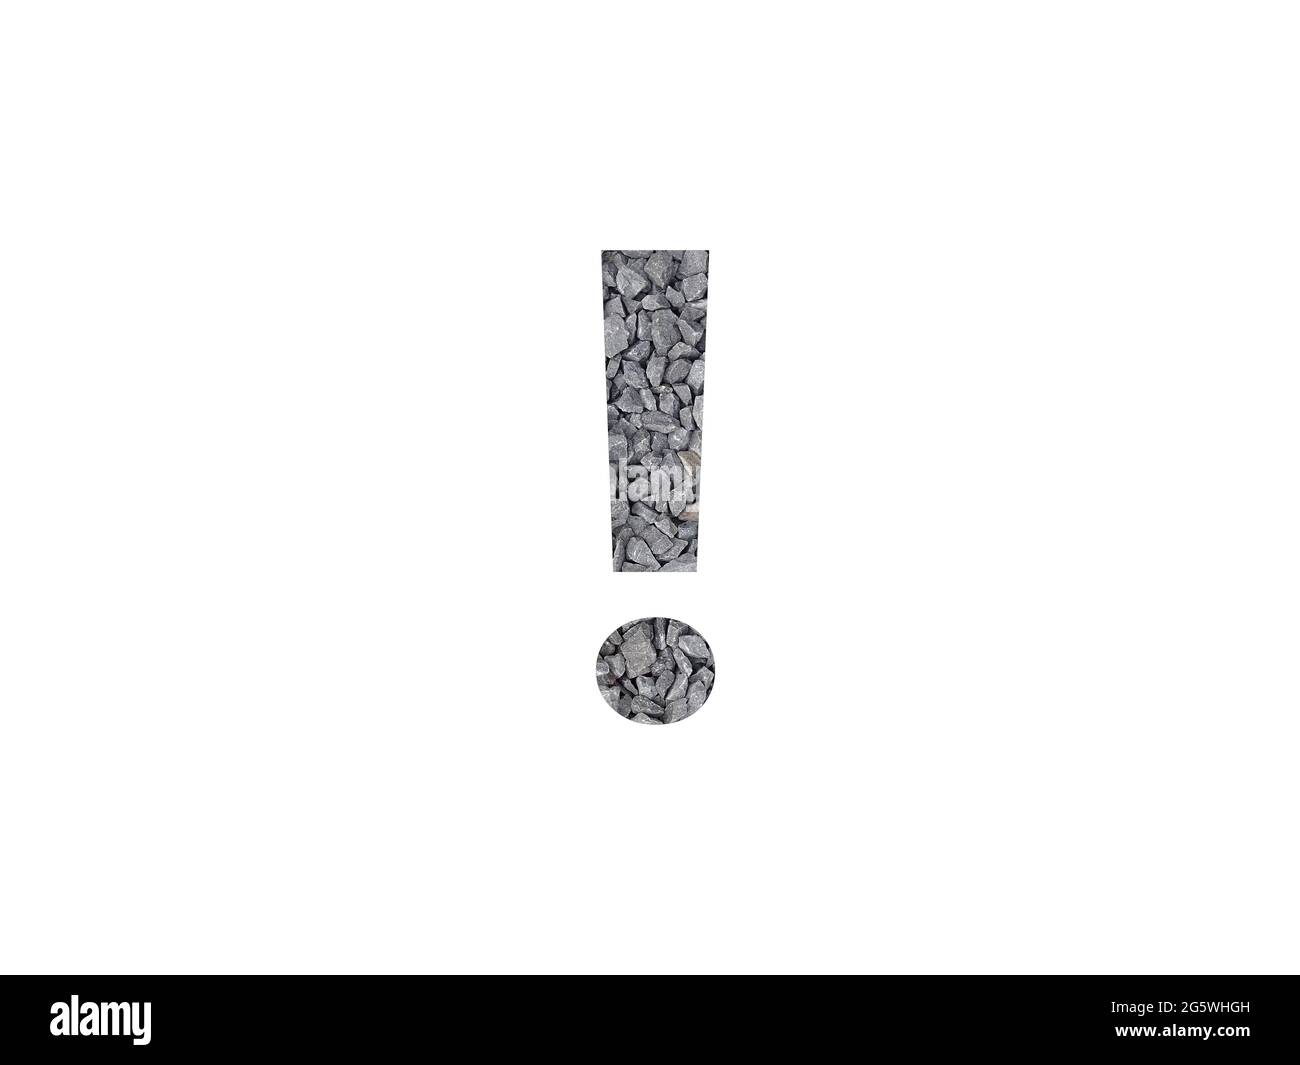 point d'exclamation de l'alphabet avec du gravier gris isolé sur un fond blanc Banque D'Images